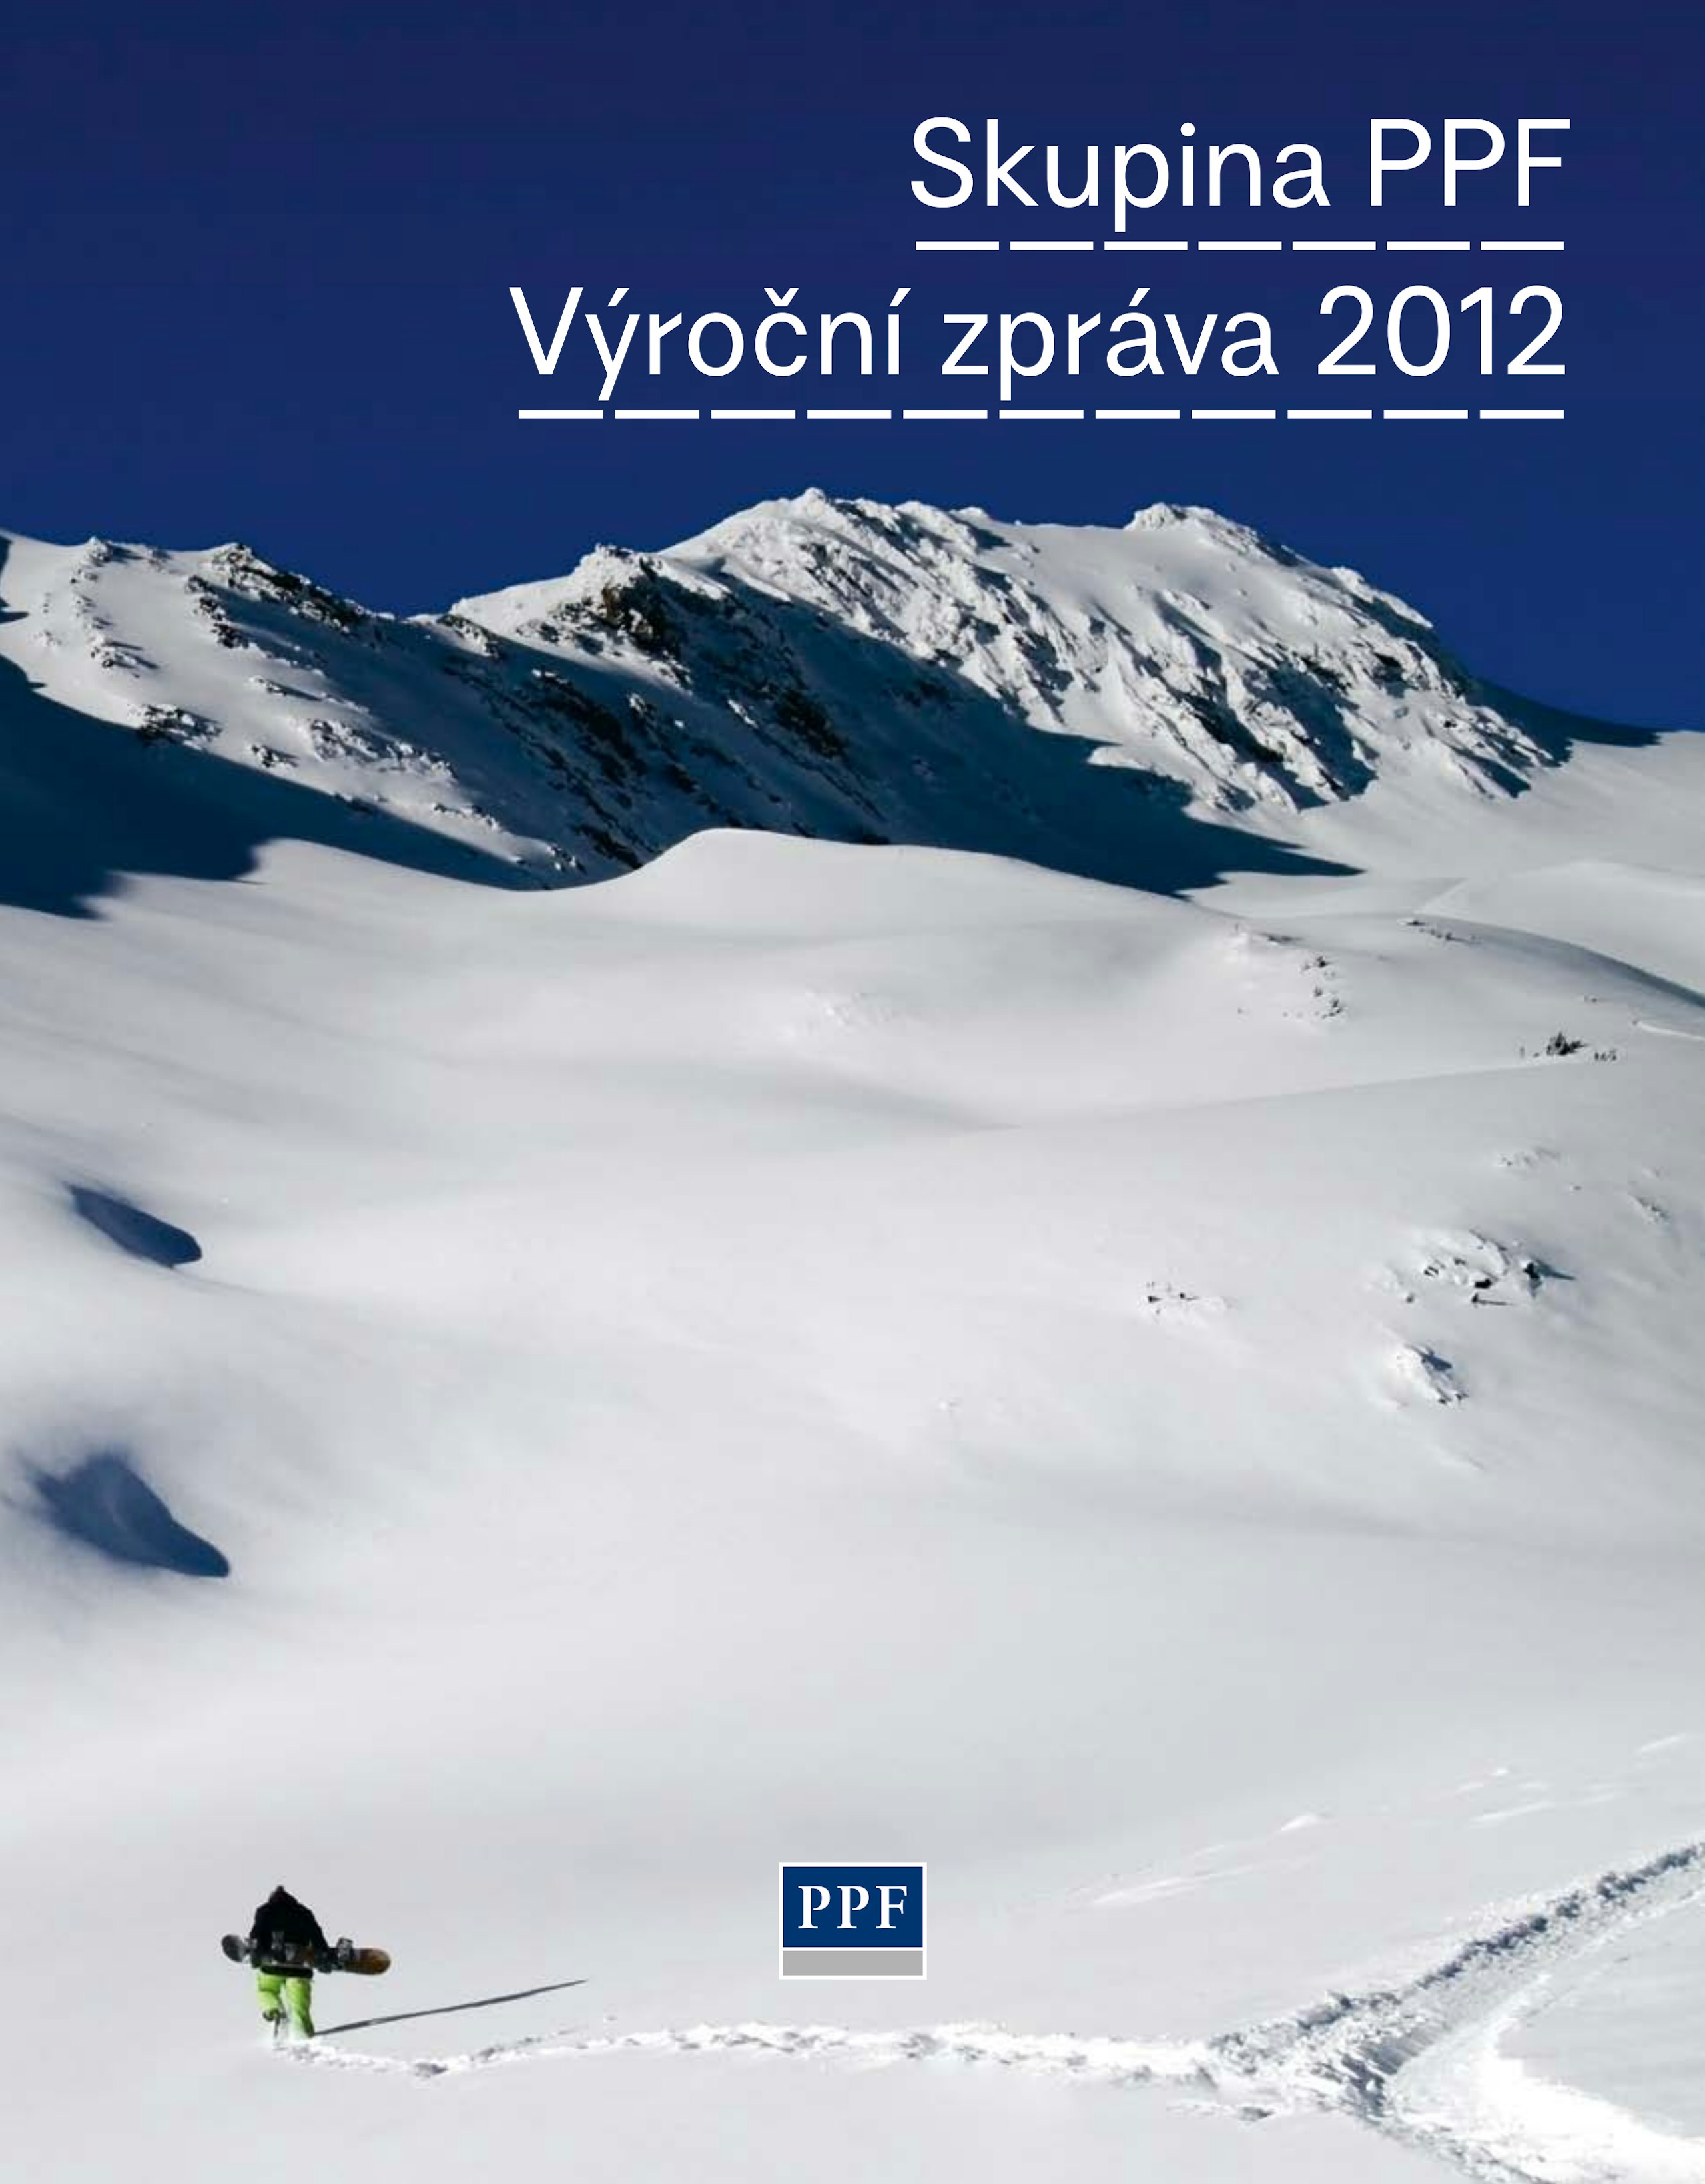 PPF Group Výroční zpráva 2012